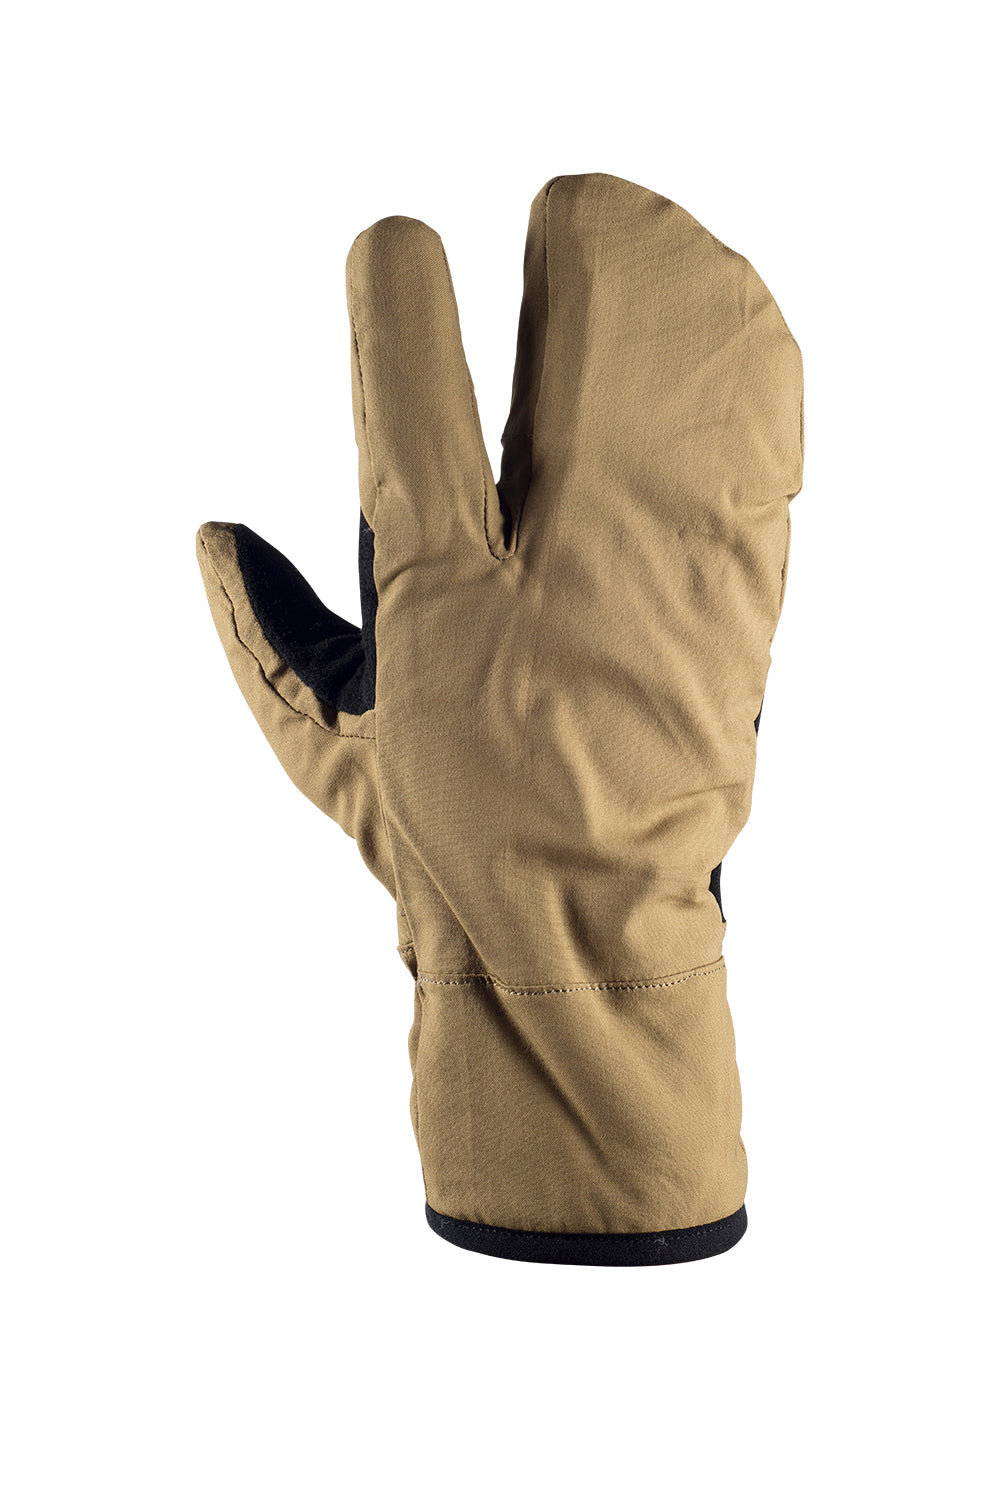 Gloves, 3 Finger (Split mittens) [BSD-GL01] - $16.95 : Historic